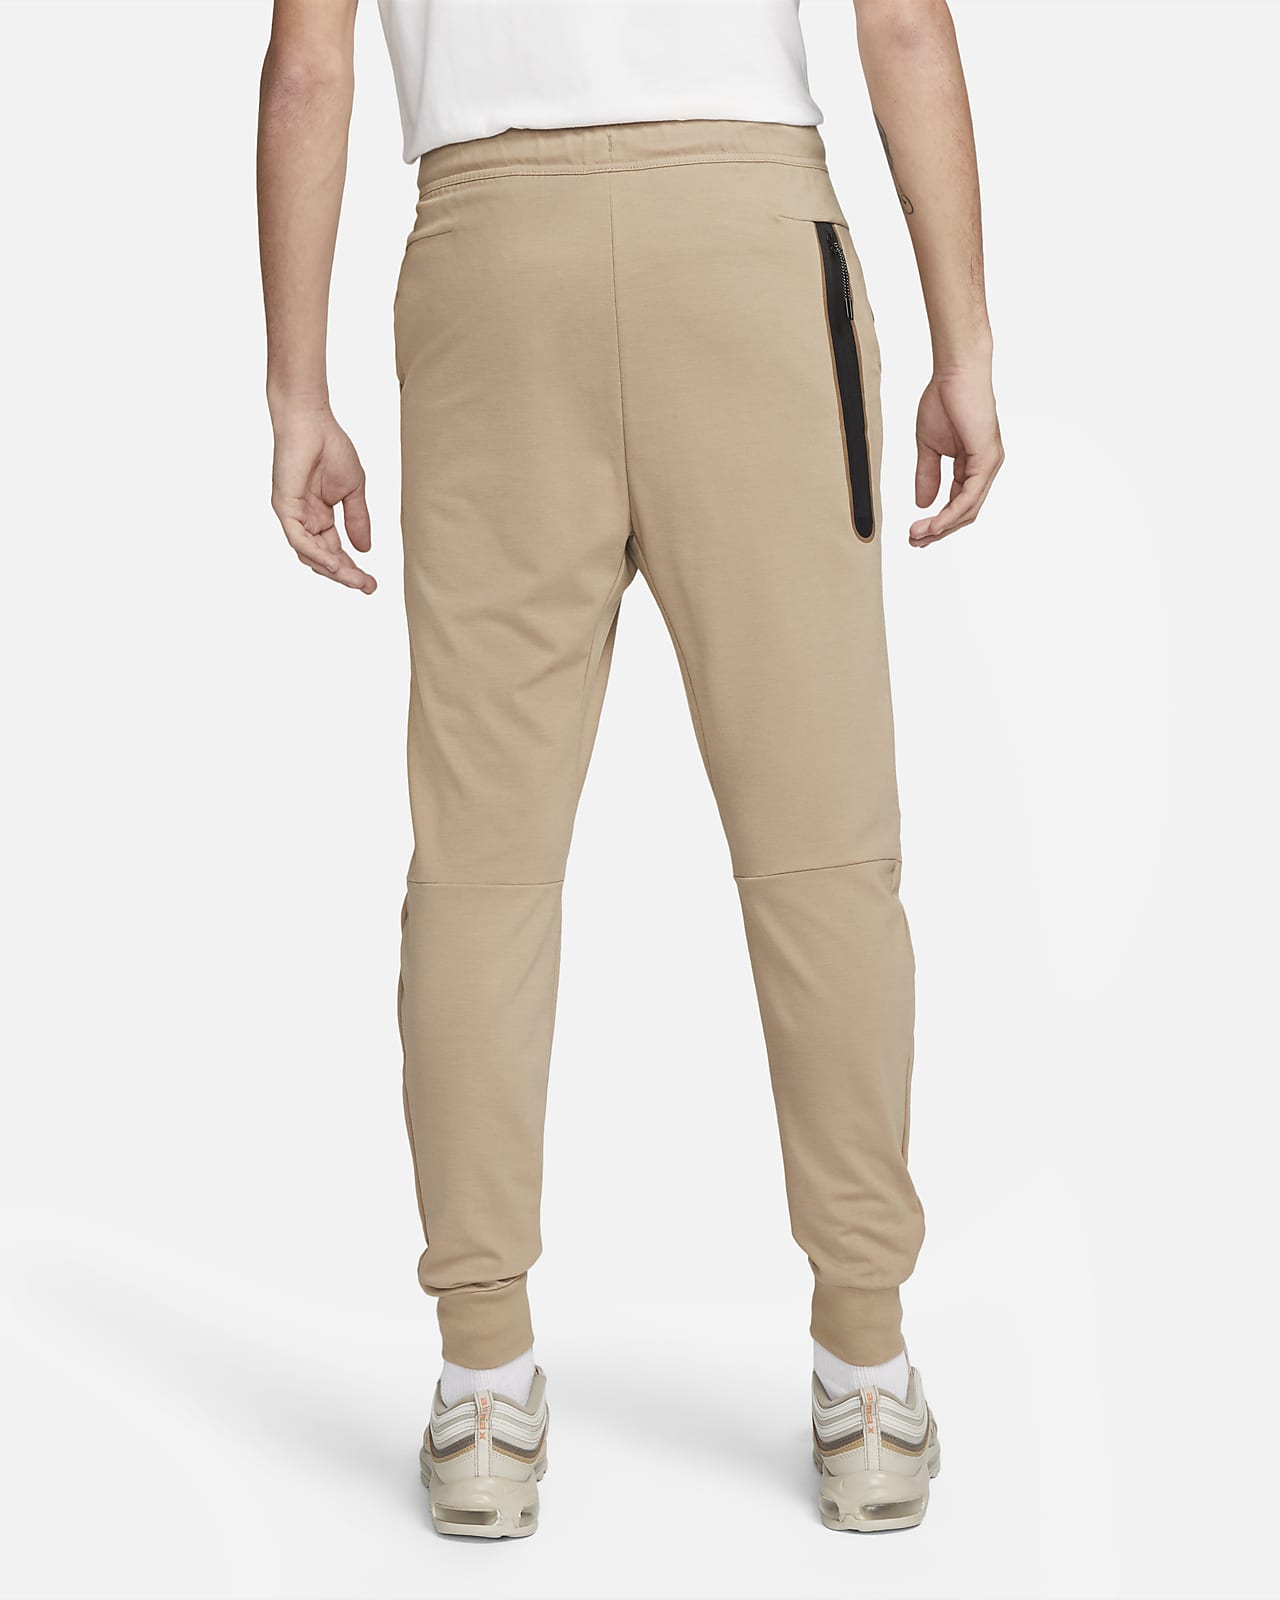 Sportswear Tech Fleece Lightweight Men's Slim-Fit Jogger Sweatpants.